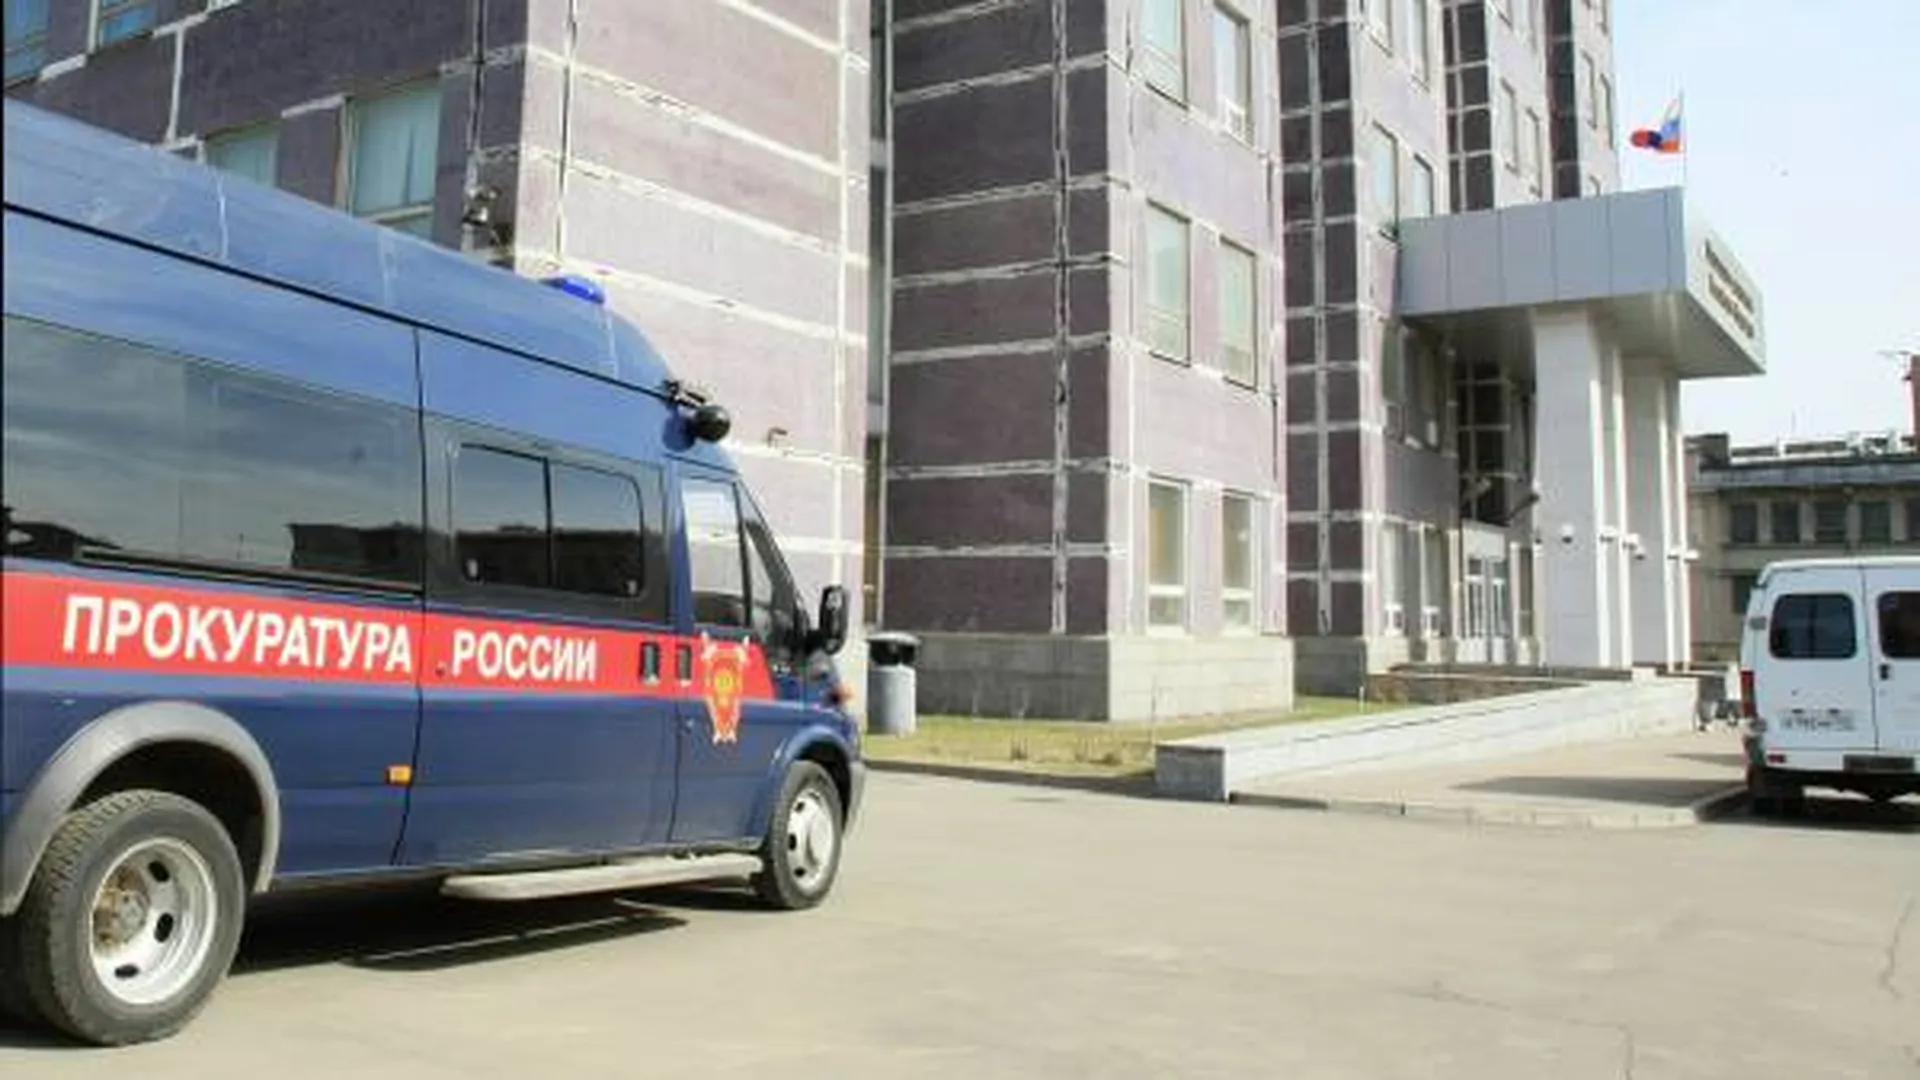 Прокуратура поставила на контроль расследование убийства и изнасилования пенсионерки в Сергиевом Посаде